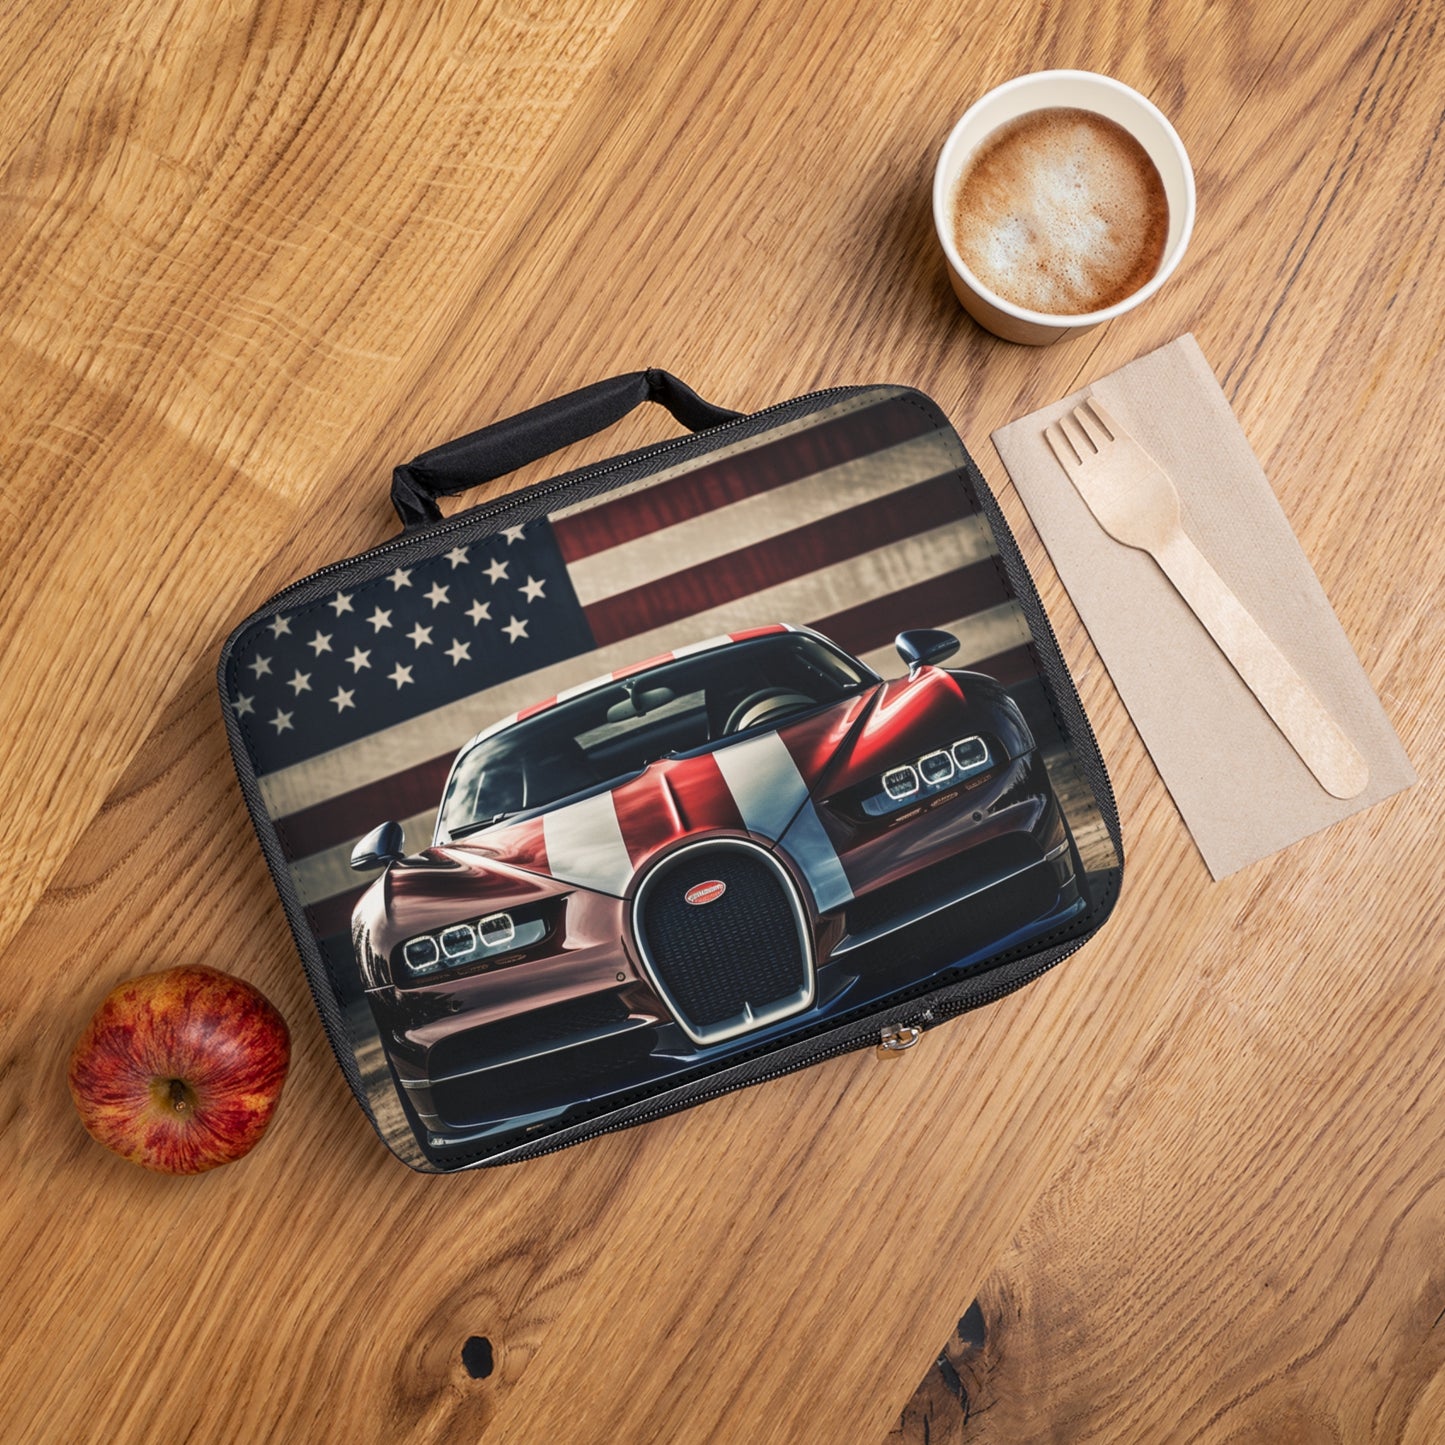 Lunch Bag Bugatti Flag 1